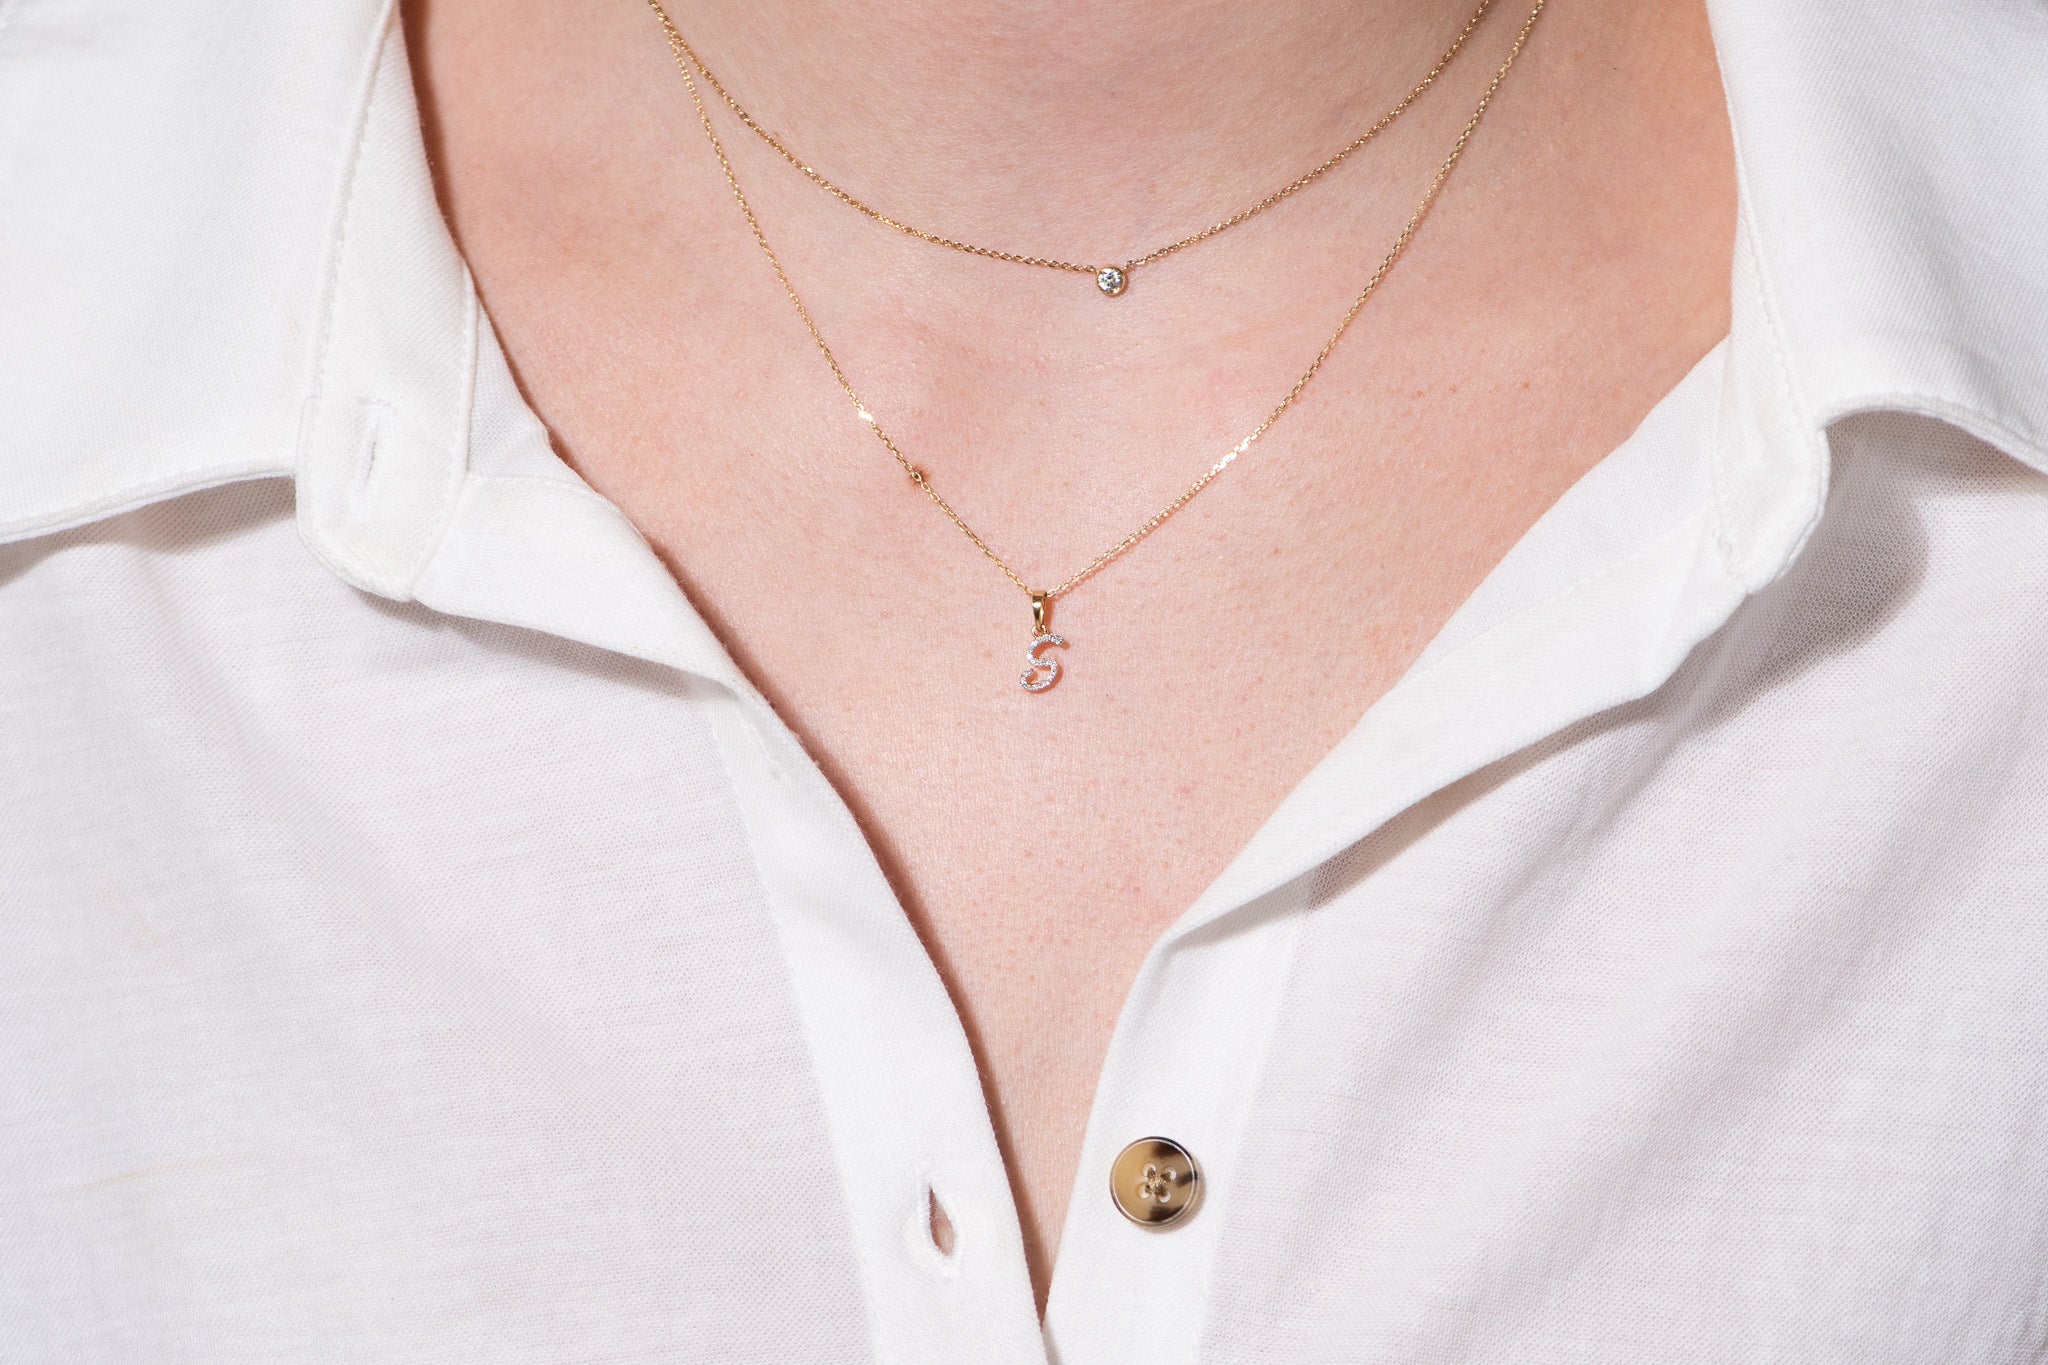 Cursive Diamond Initial Necklace - S Necklaces Estella Collection #product_description# 18557 14k Diamond Gemstone #tag4# #tag5# #tag6# #tag7# #tag8# #tag9# #tag10# 14k Yellow Gold